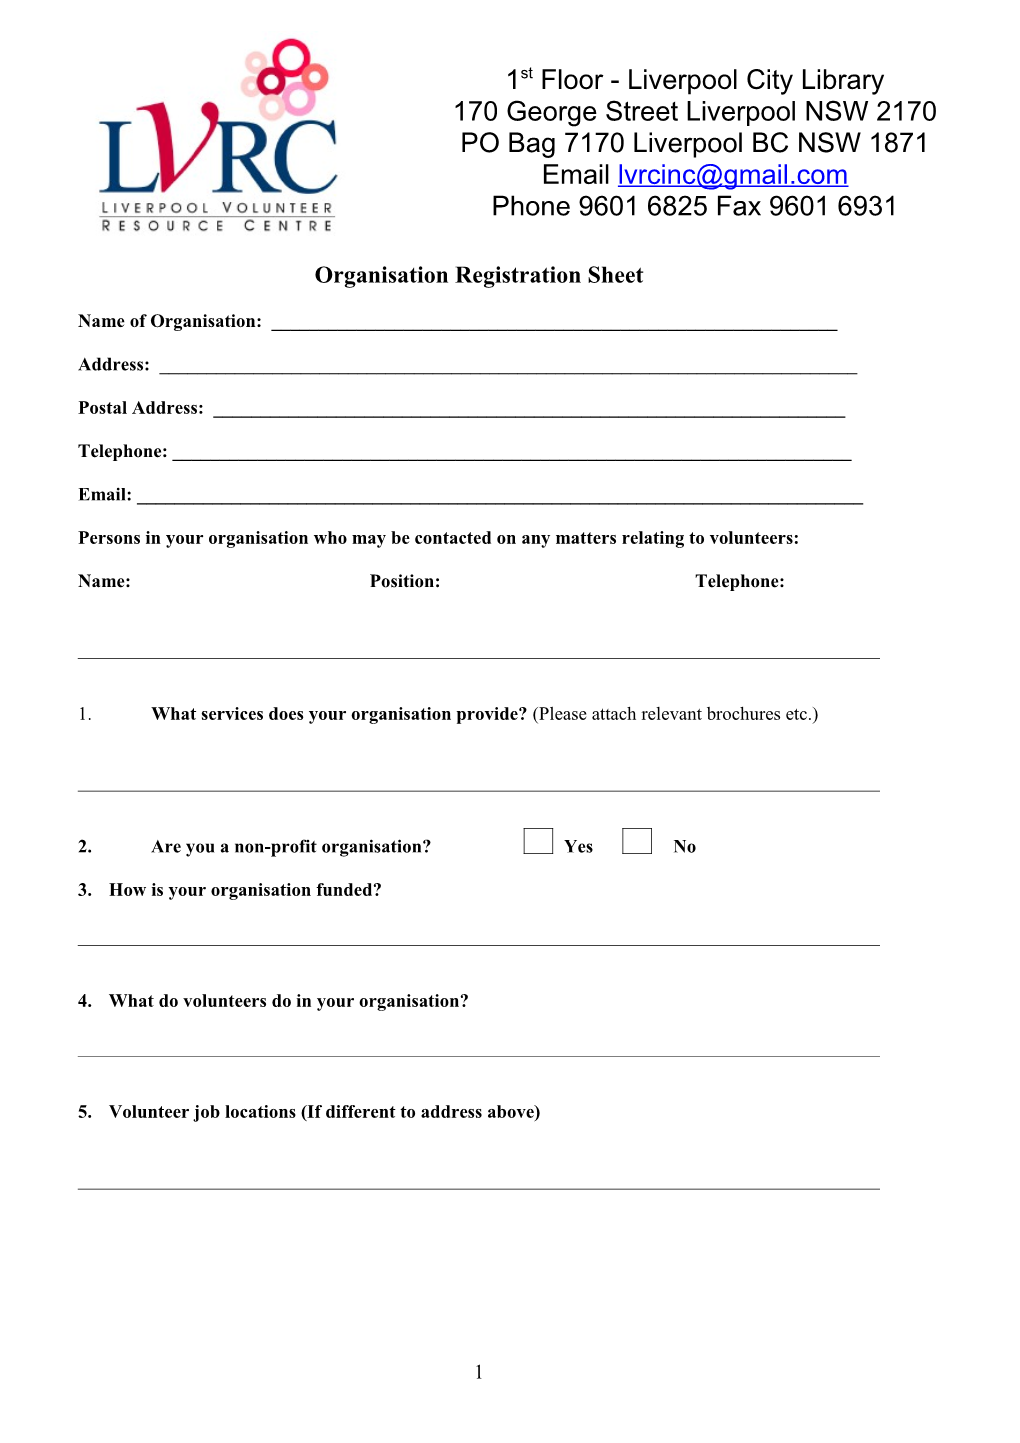 Organisation Registration Sheet